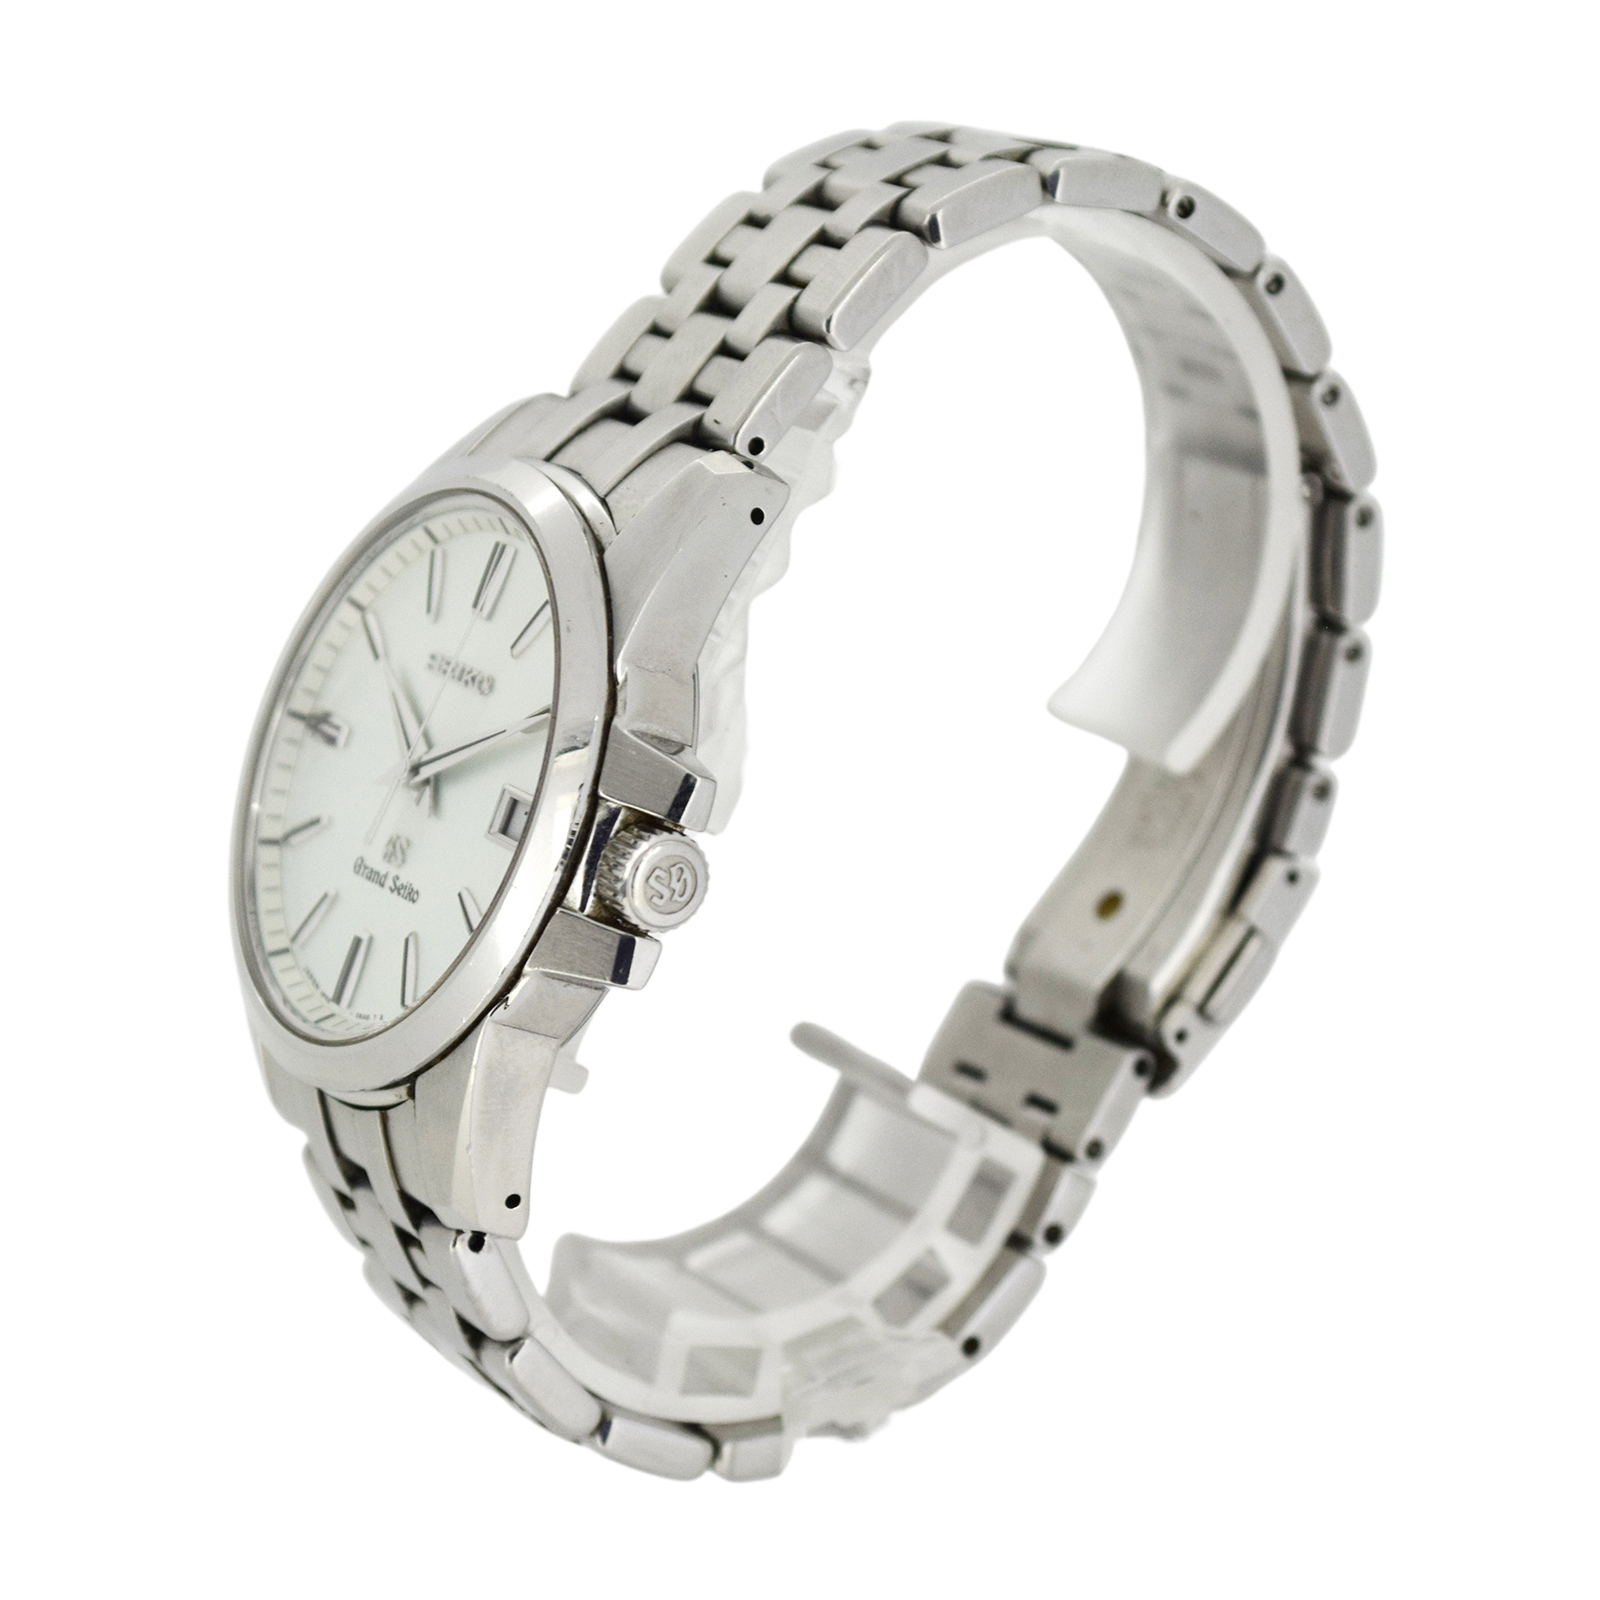 SEIKO セイコー グランドセイコー SBGX047 9F62-0AA メンズ 腕時計 